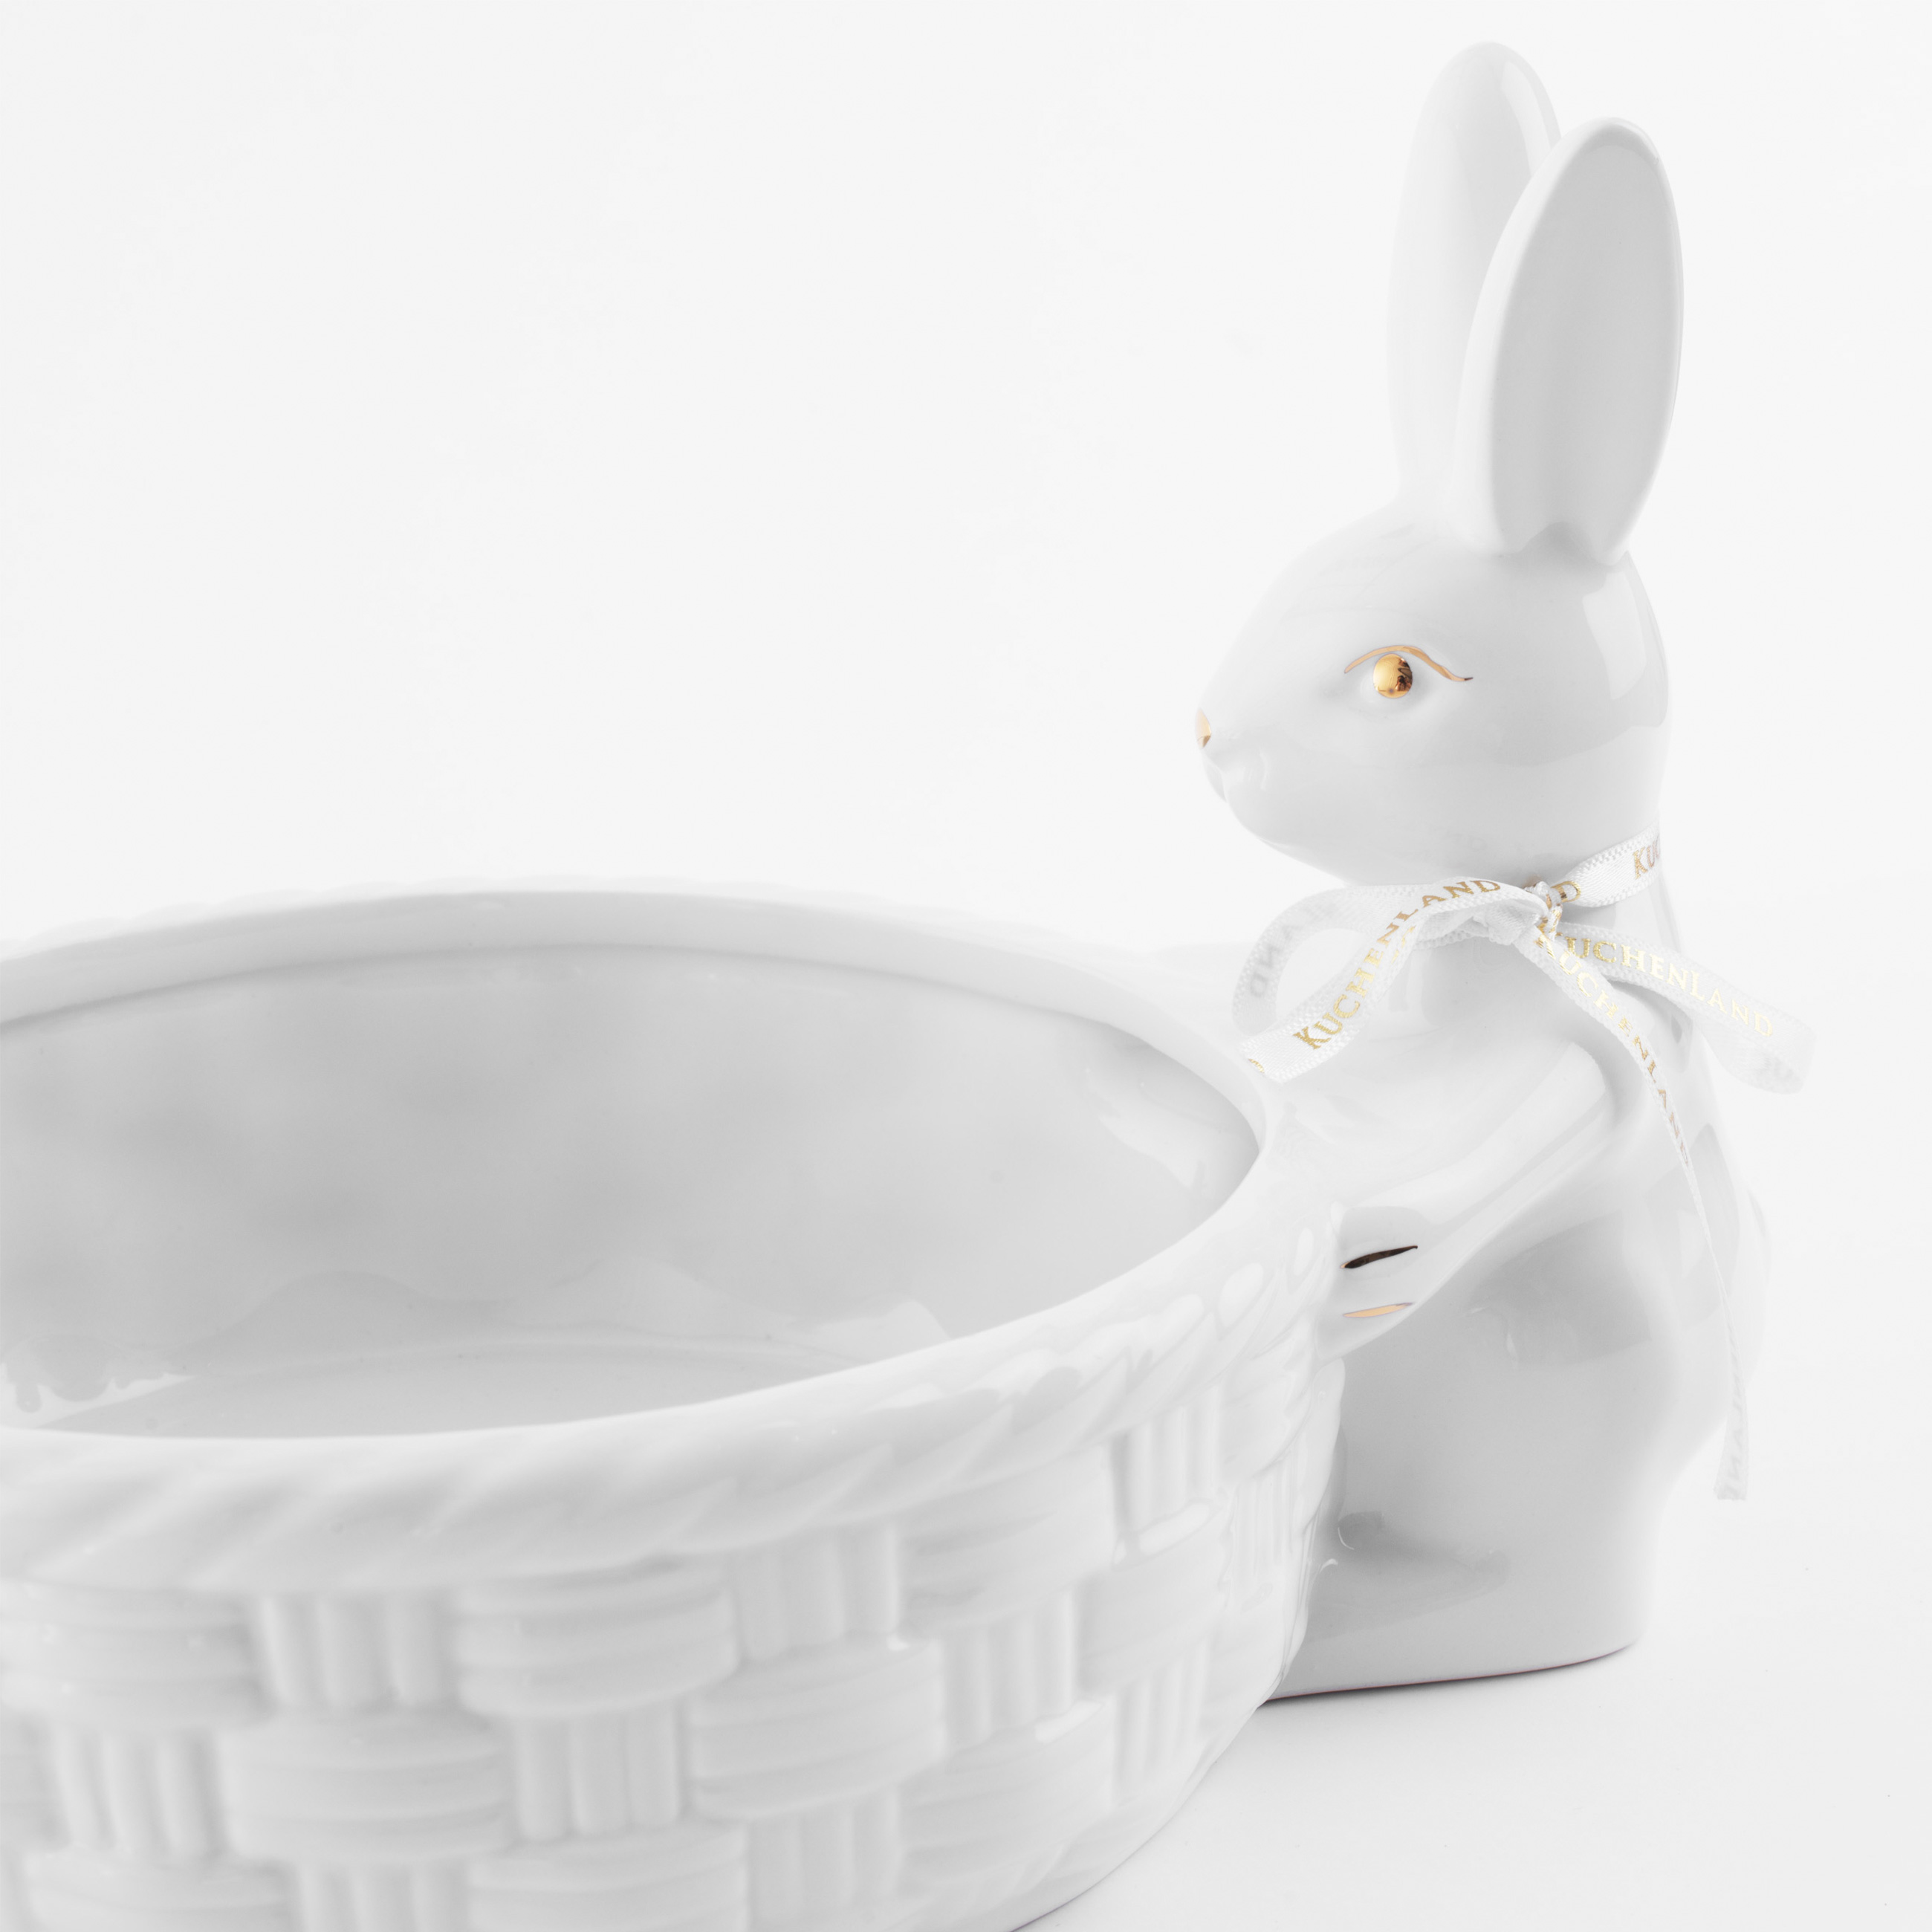 Конфетница, 28х16 см, керамика, бело-золотистая, Кролики с плетенной корзиной, Easter gold изображение № 4